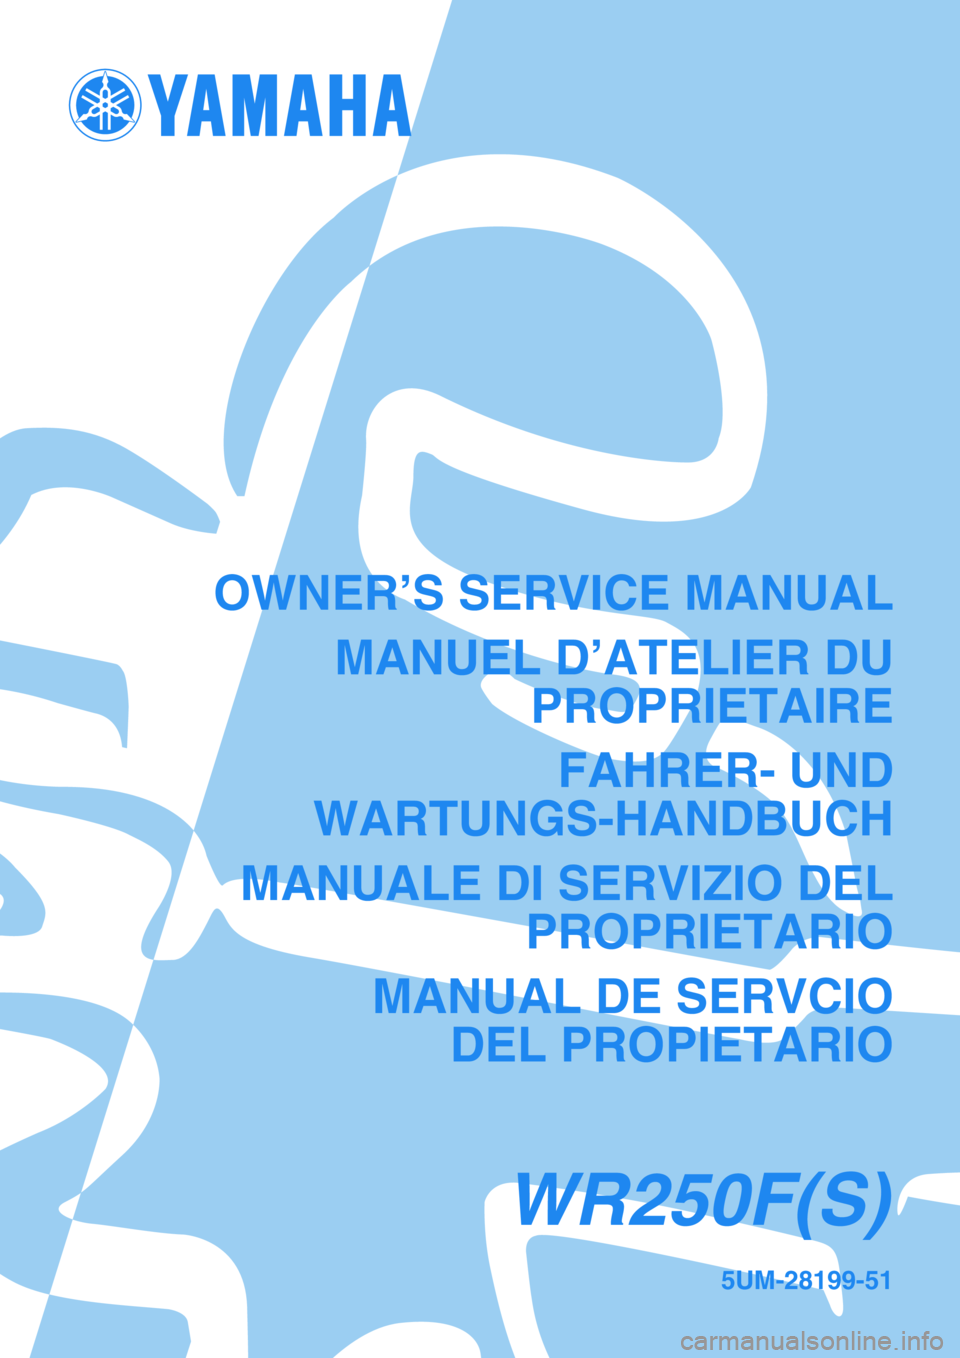 YAMAHA WR 250F 2004  Notices Demploi (in French) 5UM-28199-51
WR250F(S)
OWNER’S SERVICE MANUAL
MANUEL D’ATELIER DU
PROPRIETAIRE
FAHRER- UND
WARTUNGS-HANDBUCH
MANUALE DI SERVIZIO DEL
PROPRIETARIO
MANUAL DE SERVCIO
DEL PROPIETARIO 